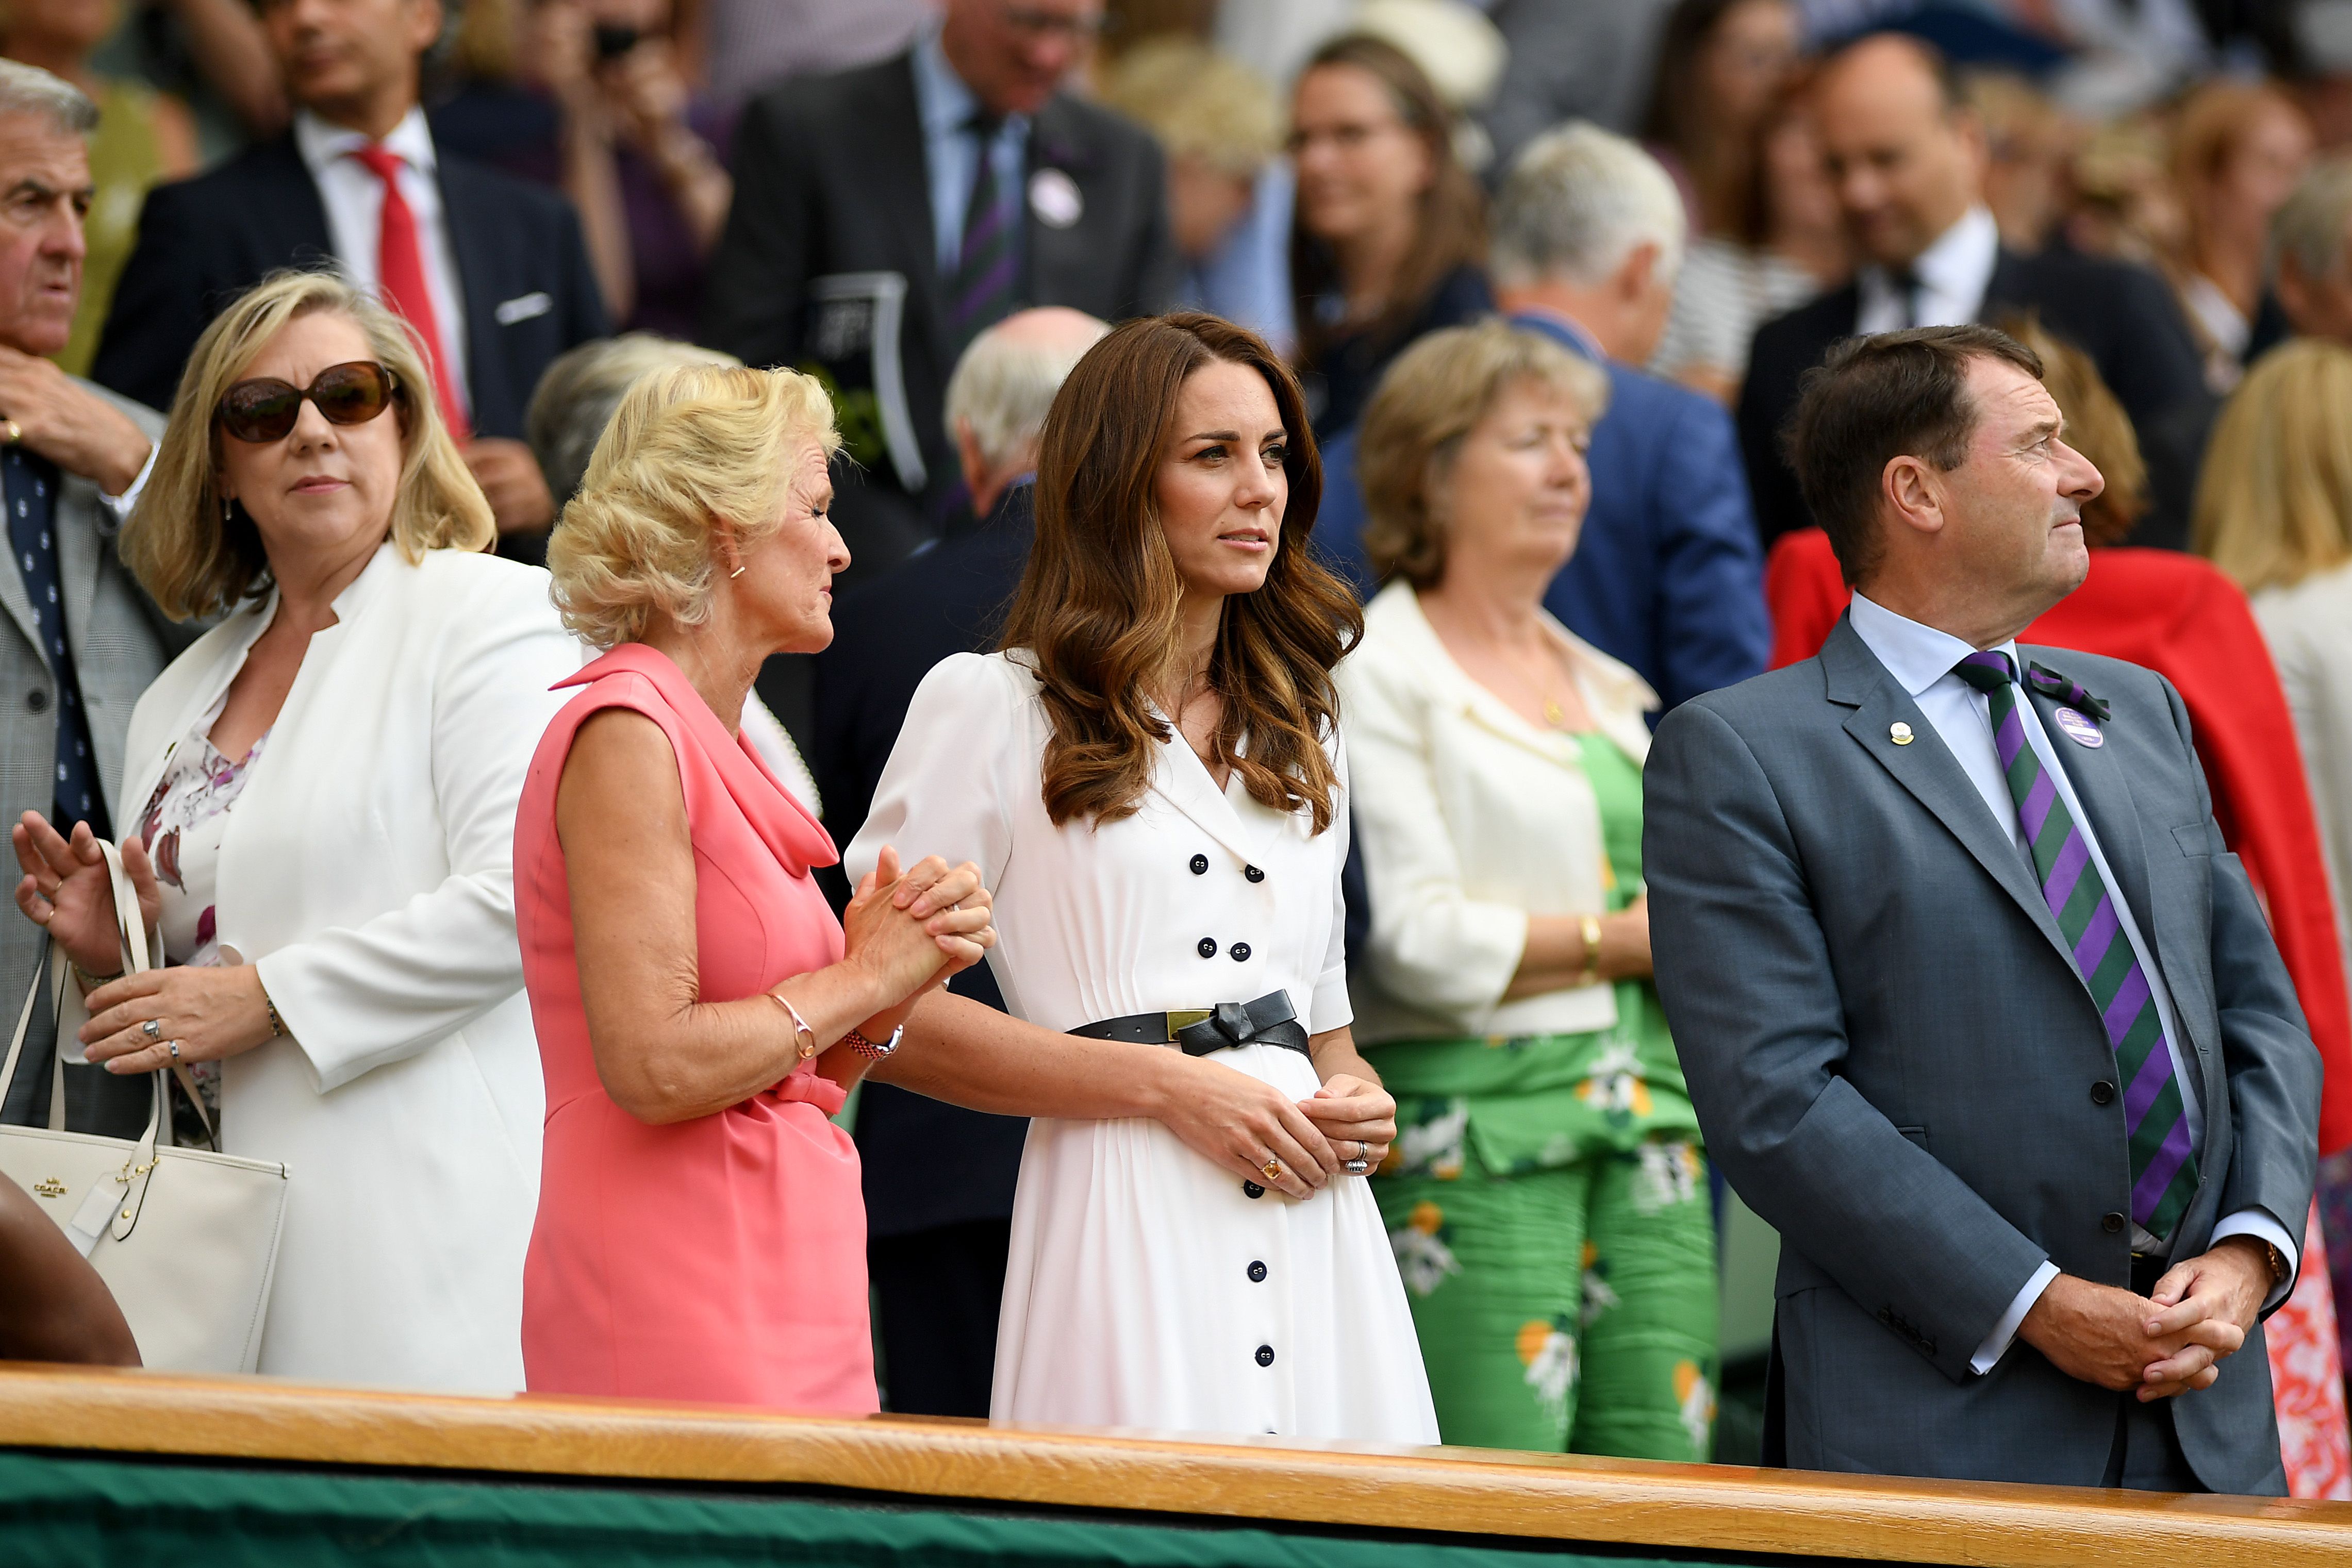 Кейт Міддлтон вдягнула сукню, як у принцеси Діани | Королівська родина | 1+1